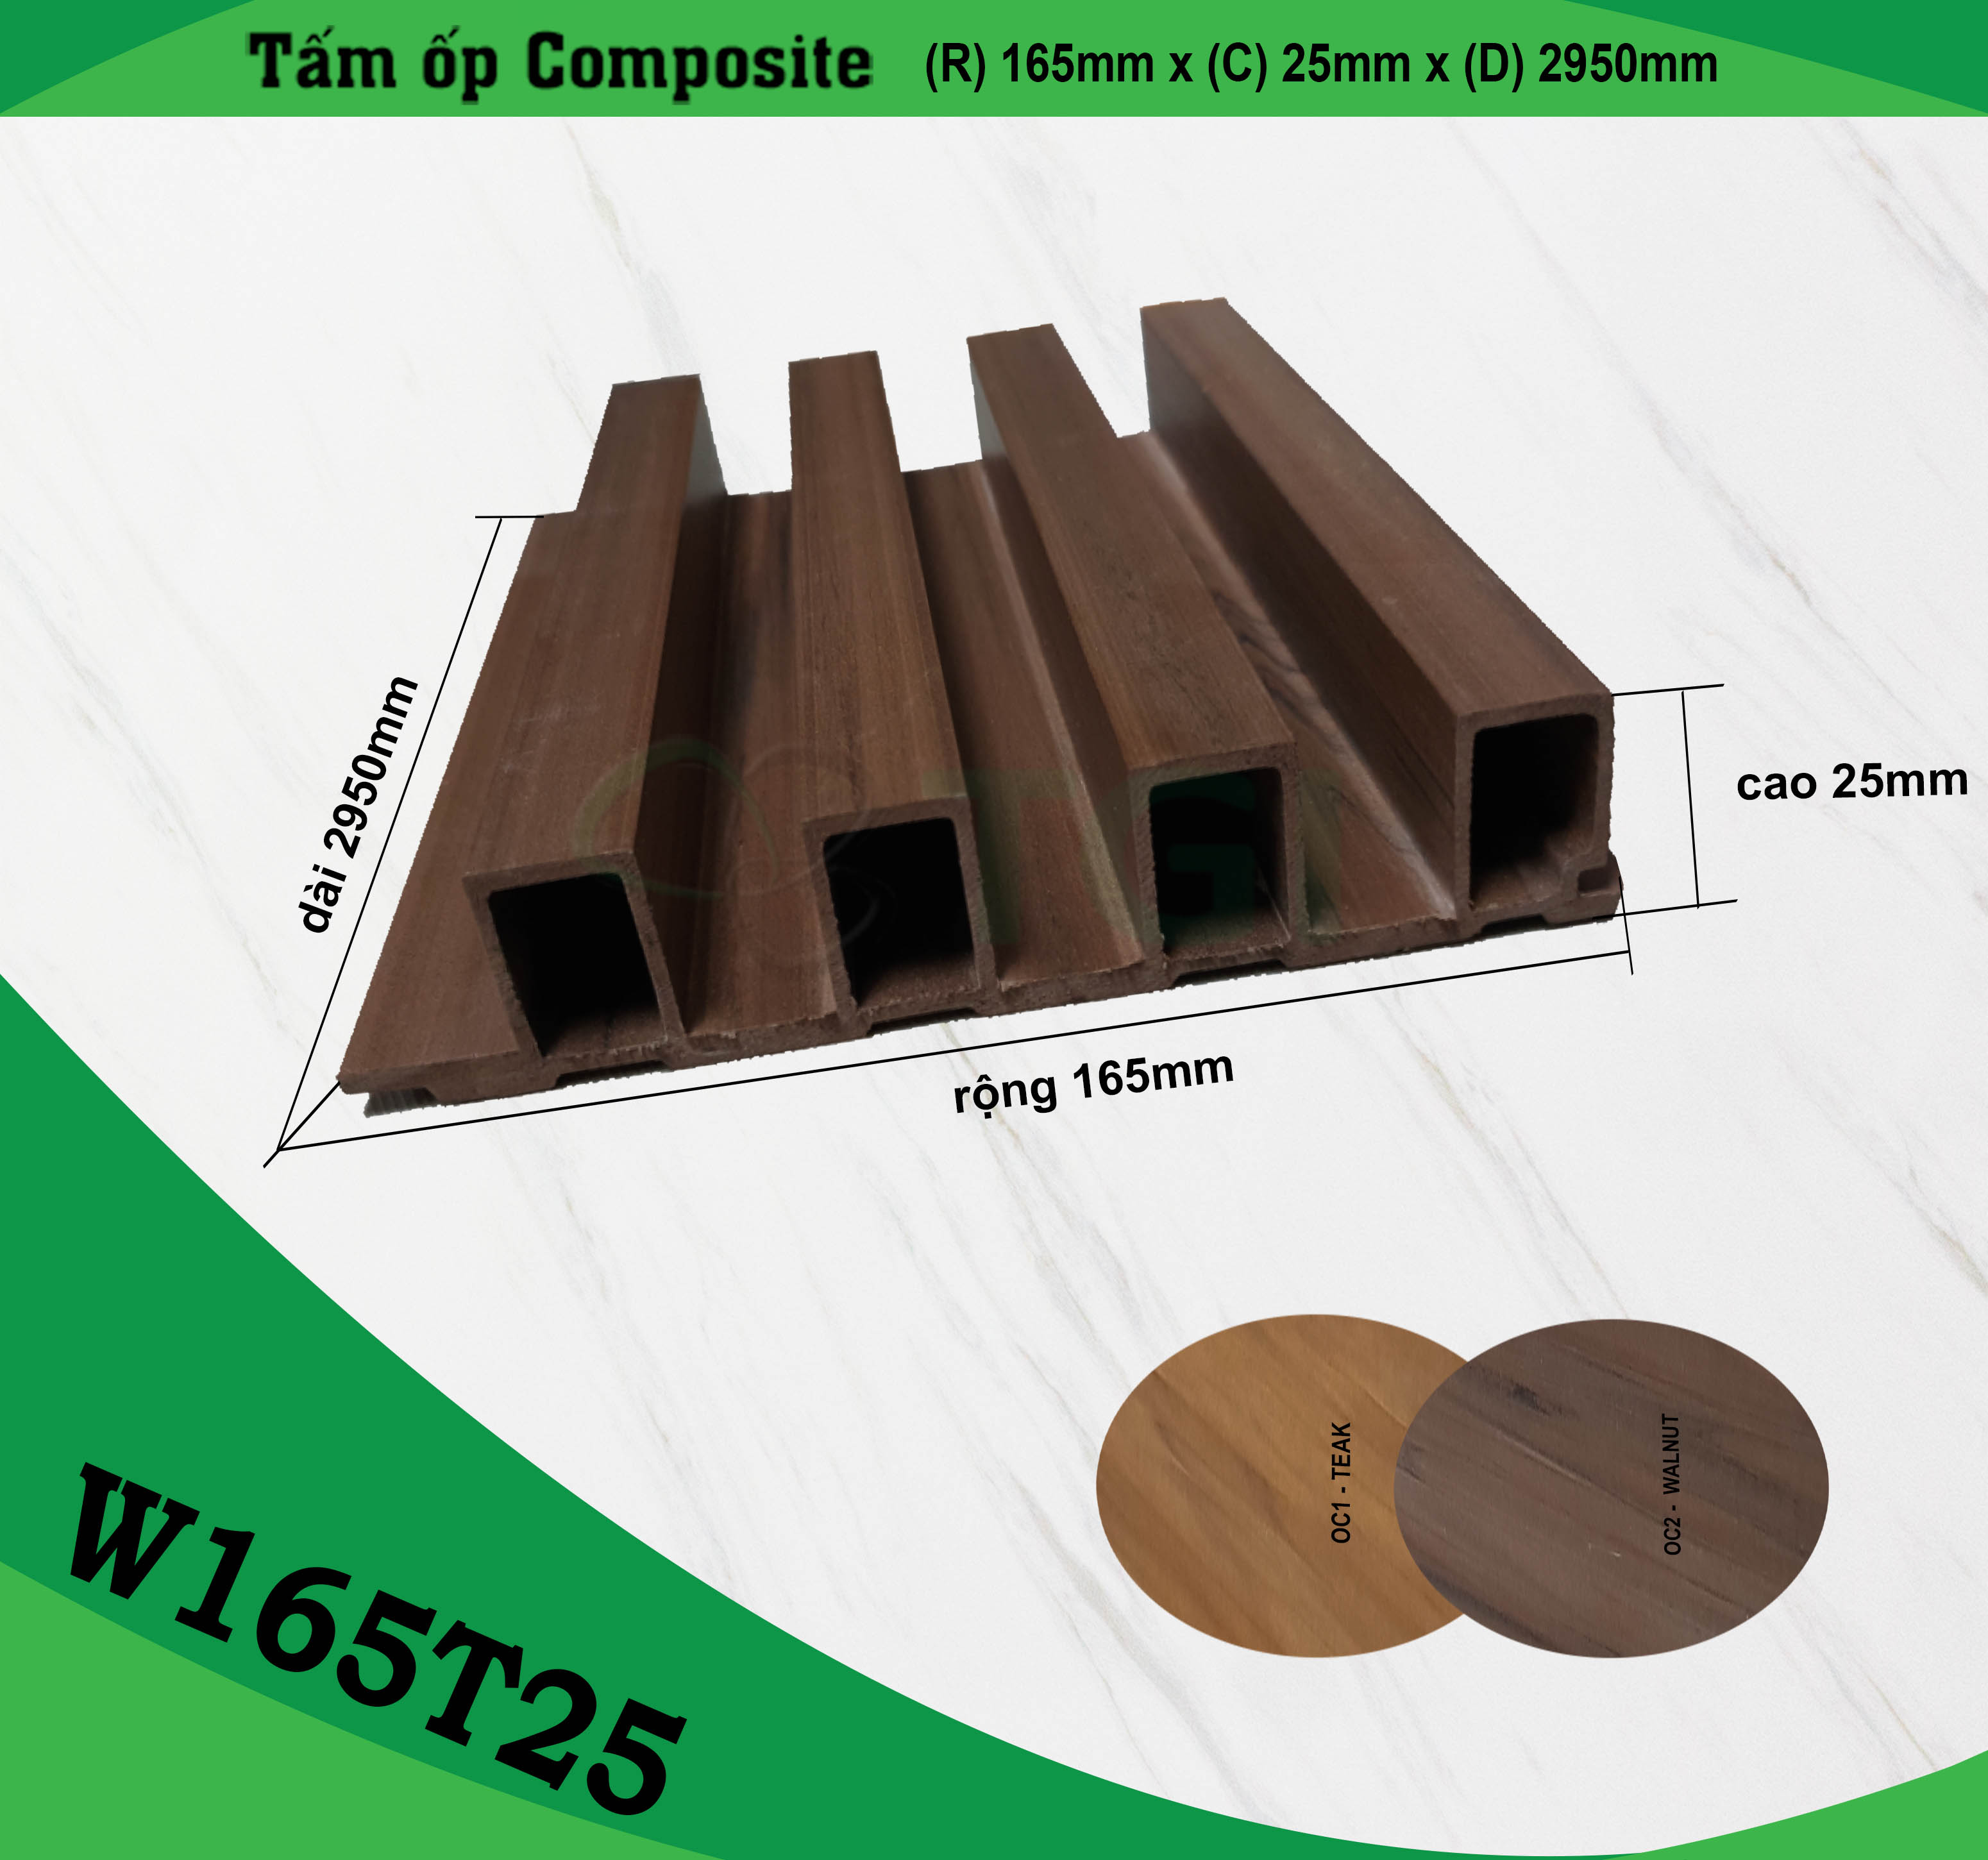 Sản phẩm nhựa composite giả gỗ không chỉ là một giải pháp hoàn hảo cho việc trang trí nội thất và ngoại thất, mà còn là một giá trị đáng kể cho môi trường. Với nguồn gốc và sản xuất bền vững, các sản phẩm này sẽ giữ cho ngôi nhà của bạn luôn xanh tươi và góp phần bảo vệ môi trường.